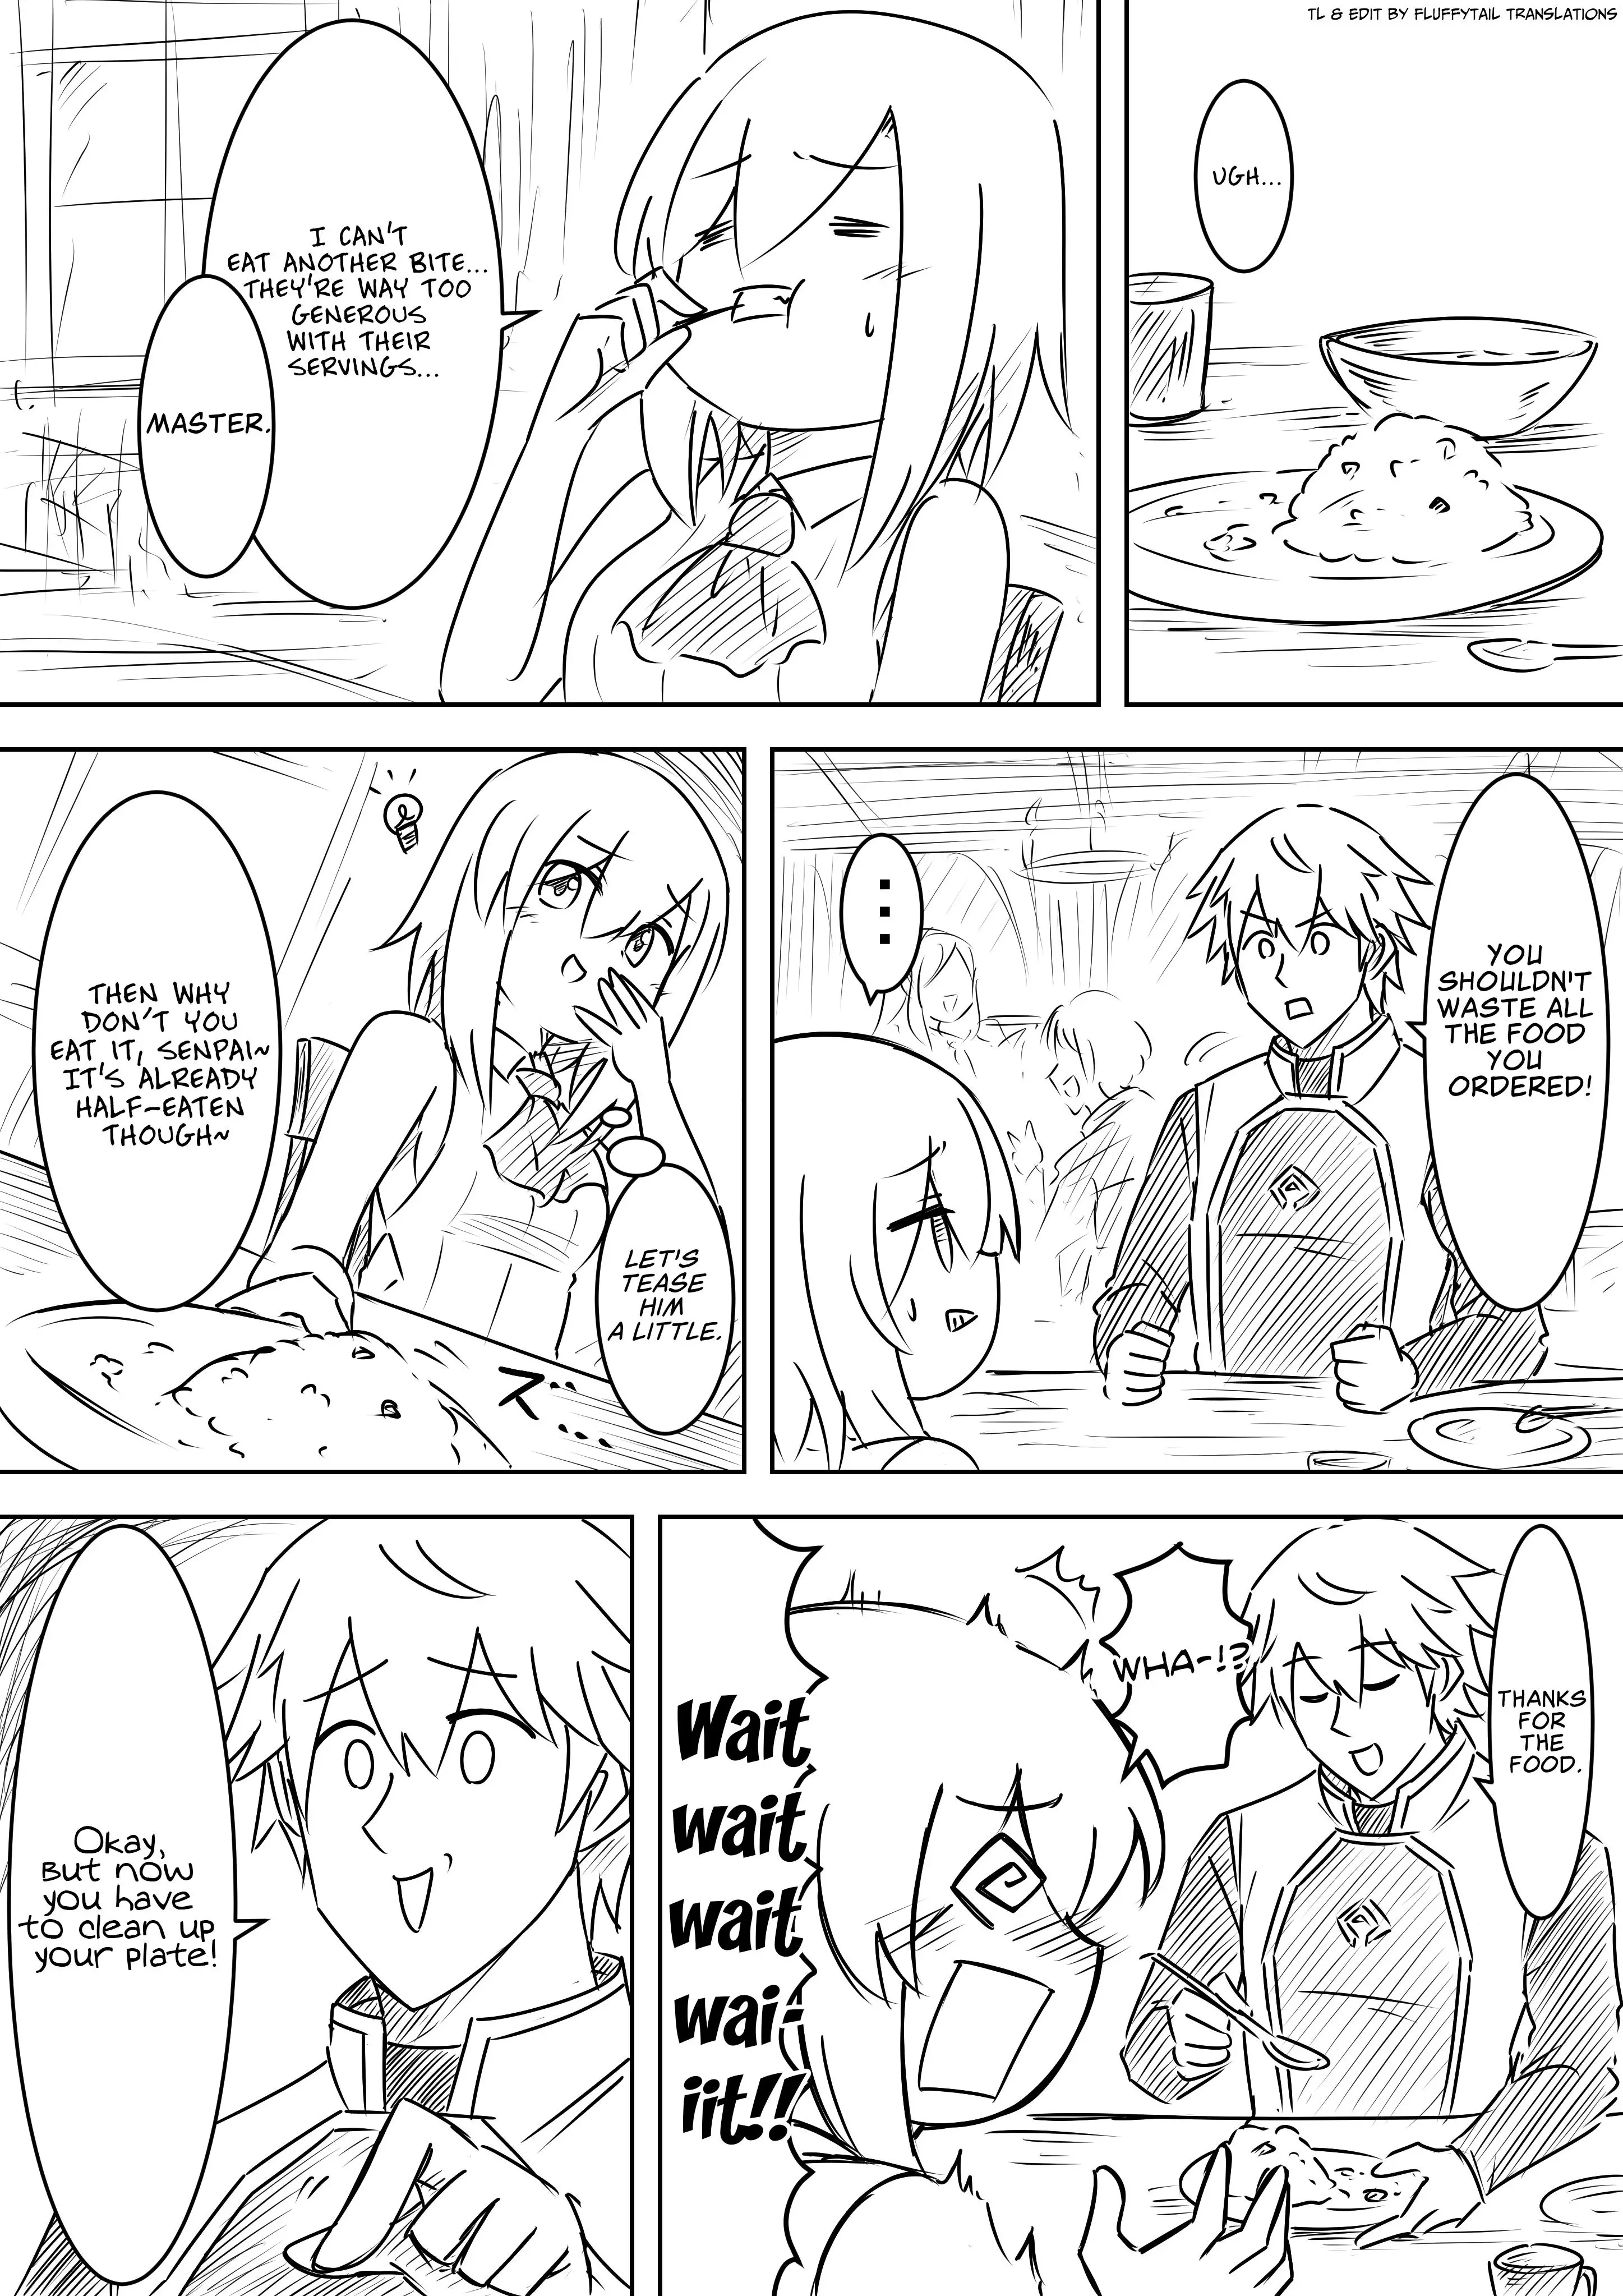 Ebimaru Misadventures (Webcomic) - 21 page 1-943eaae8